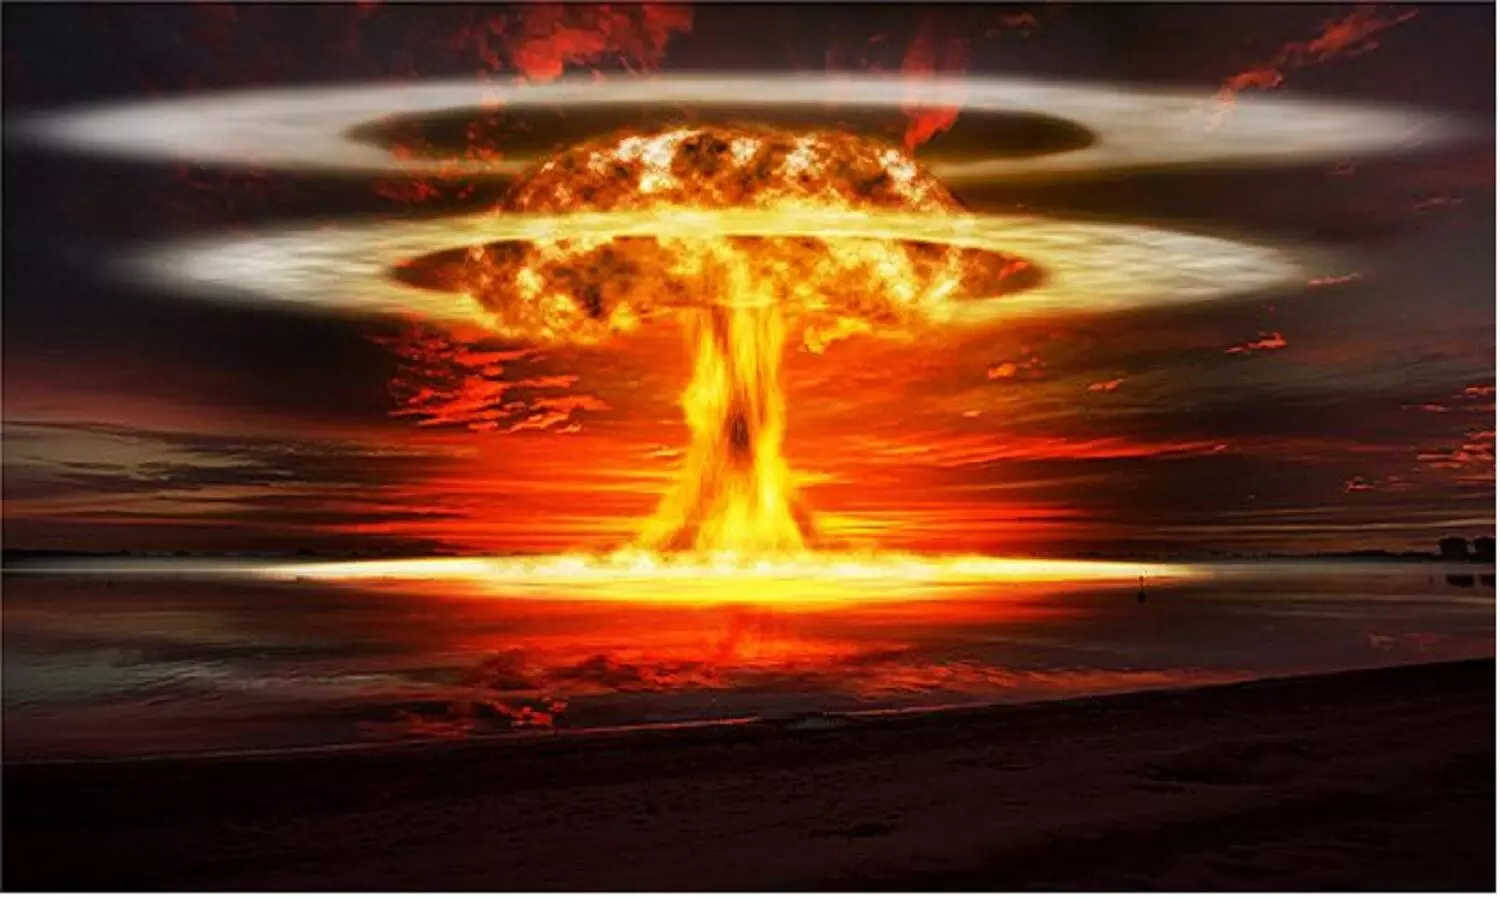 जो परमाणु युद्ध के नाम से एक्ससाइटेड हो जाते हैं उन्हें जानना चाहीये न्यूक्लियर वॉर से कितनी तबाही होती है